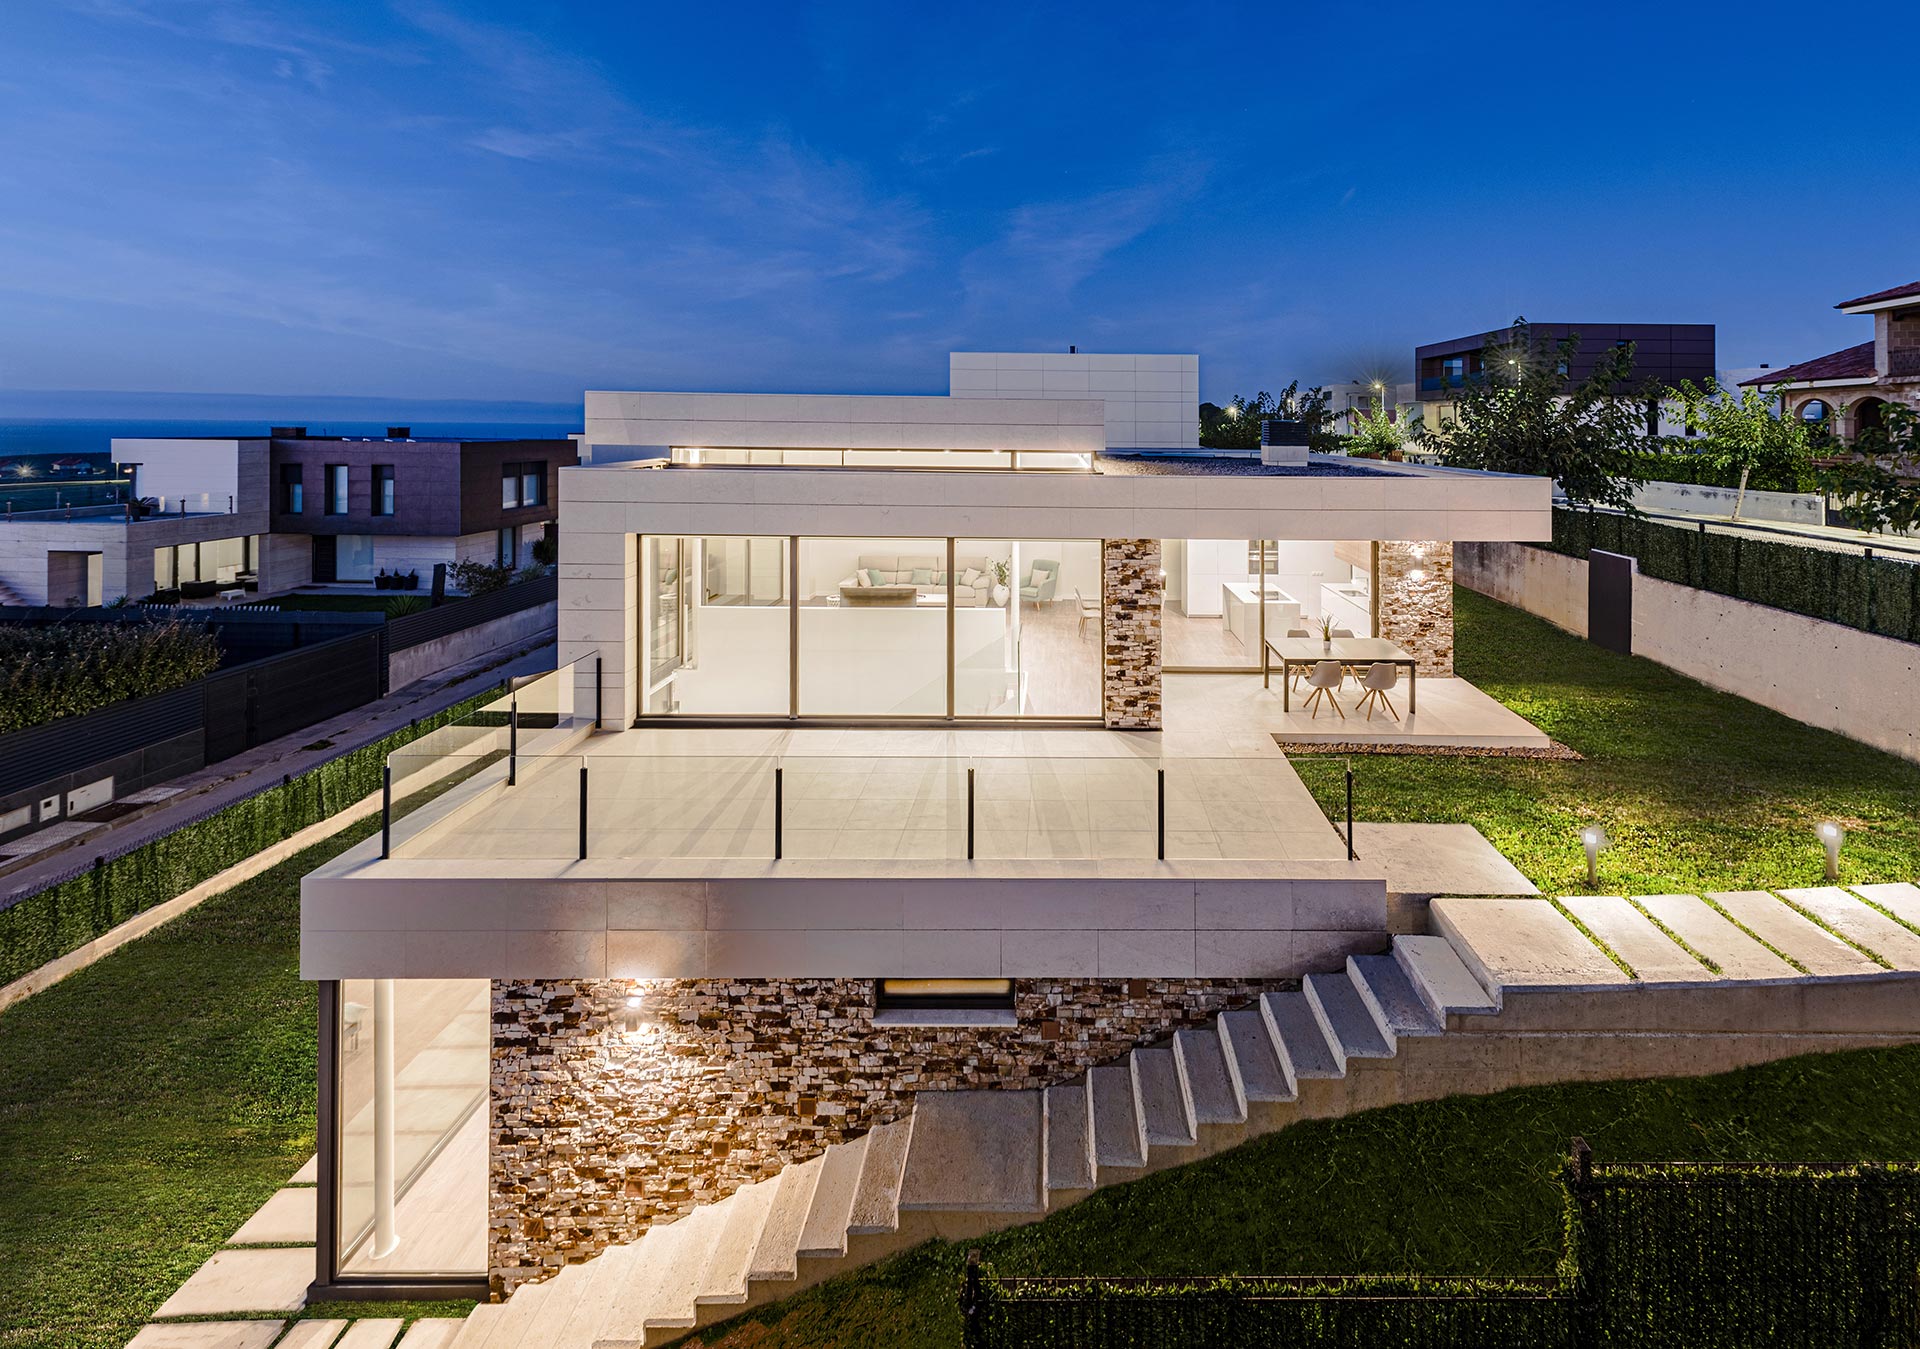 Casa de diseño de piedra blanca y grandes cristaleras diseñada por Moah Arquitectos en Liencres. Cantabria